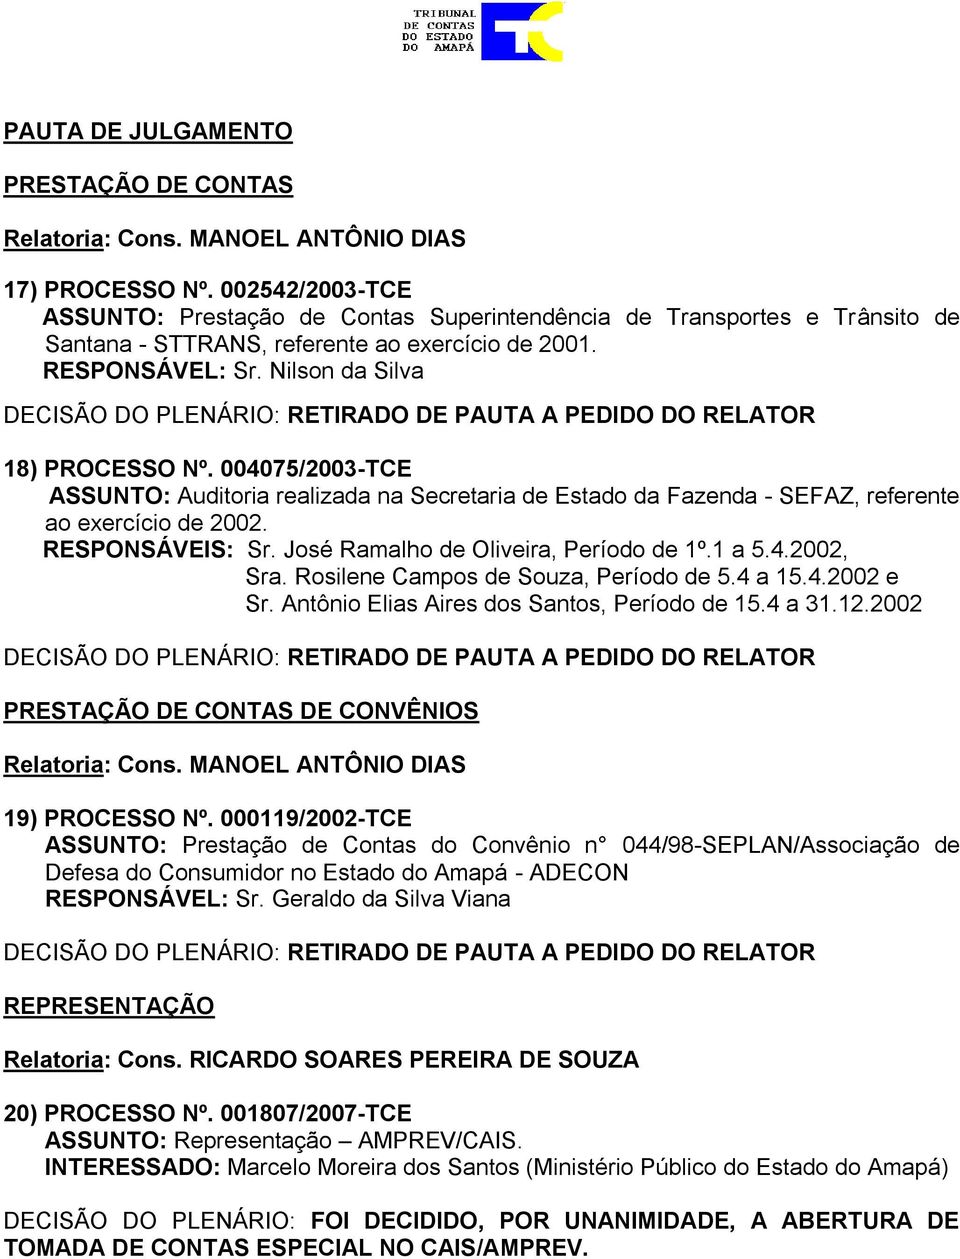 José Ramalho de Oliveira, Período de 1º.1 a 5.4.2002, Sra. Rosilene Campos de Souza, Período de 5.4 a 15.4.2002 e Sr. Antônio Elias Aires dos Santos, Período de 15.4 a 31.12.